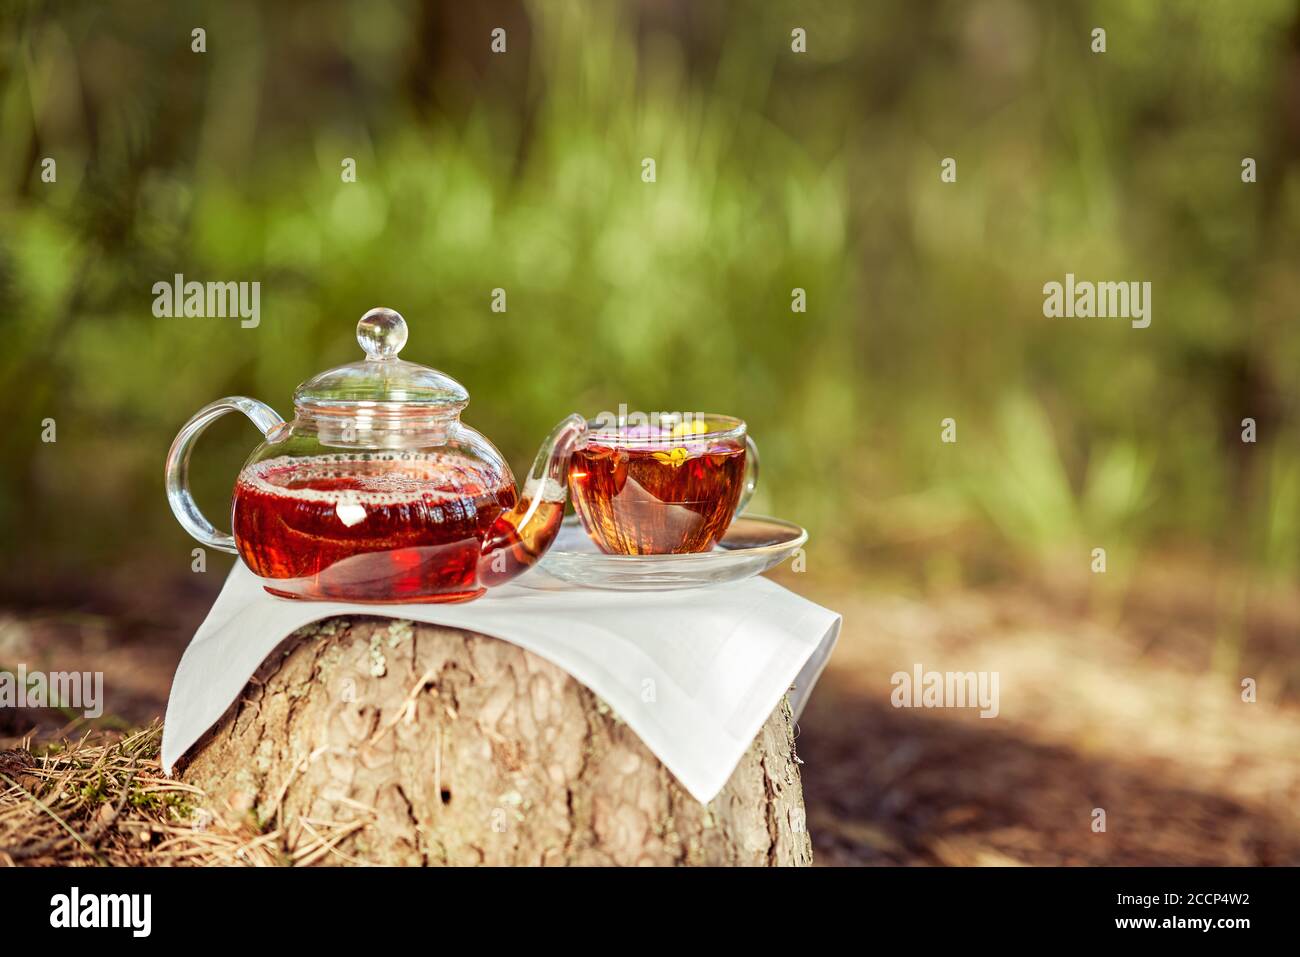 Une femme verse le thé d'une théière en verre dans une tasse en verre. Thé en plein air. Gros plan d'une coupe et d'une théière dans la nature en forêt Banque D'Images